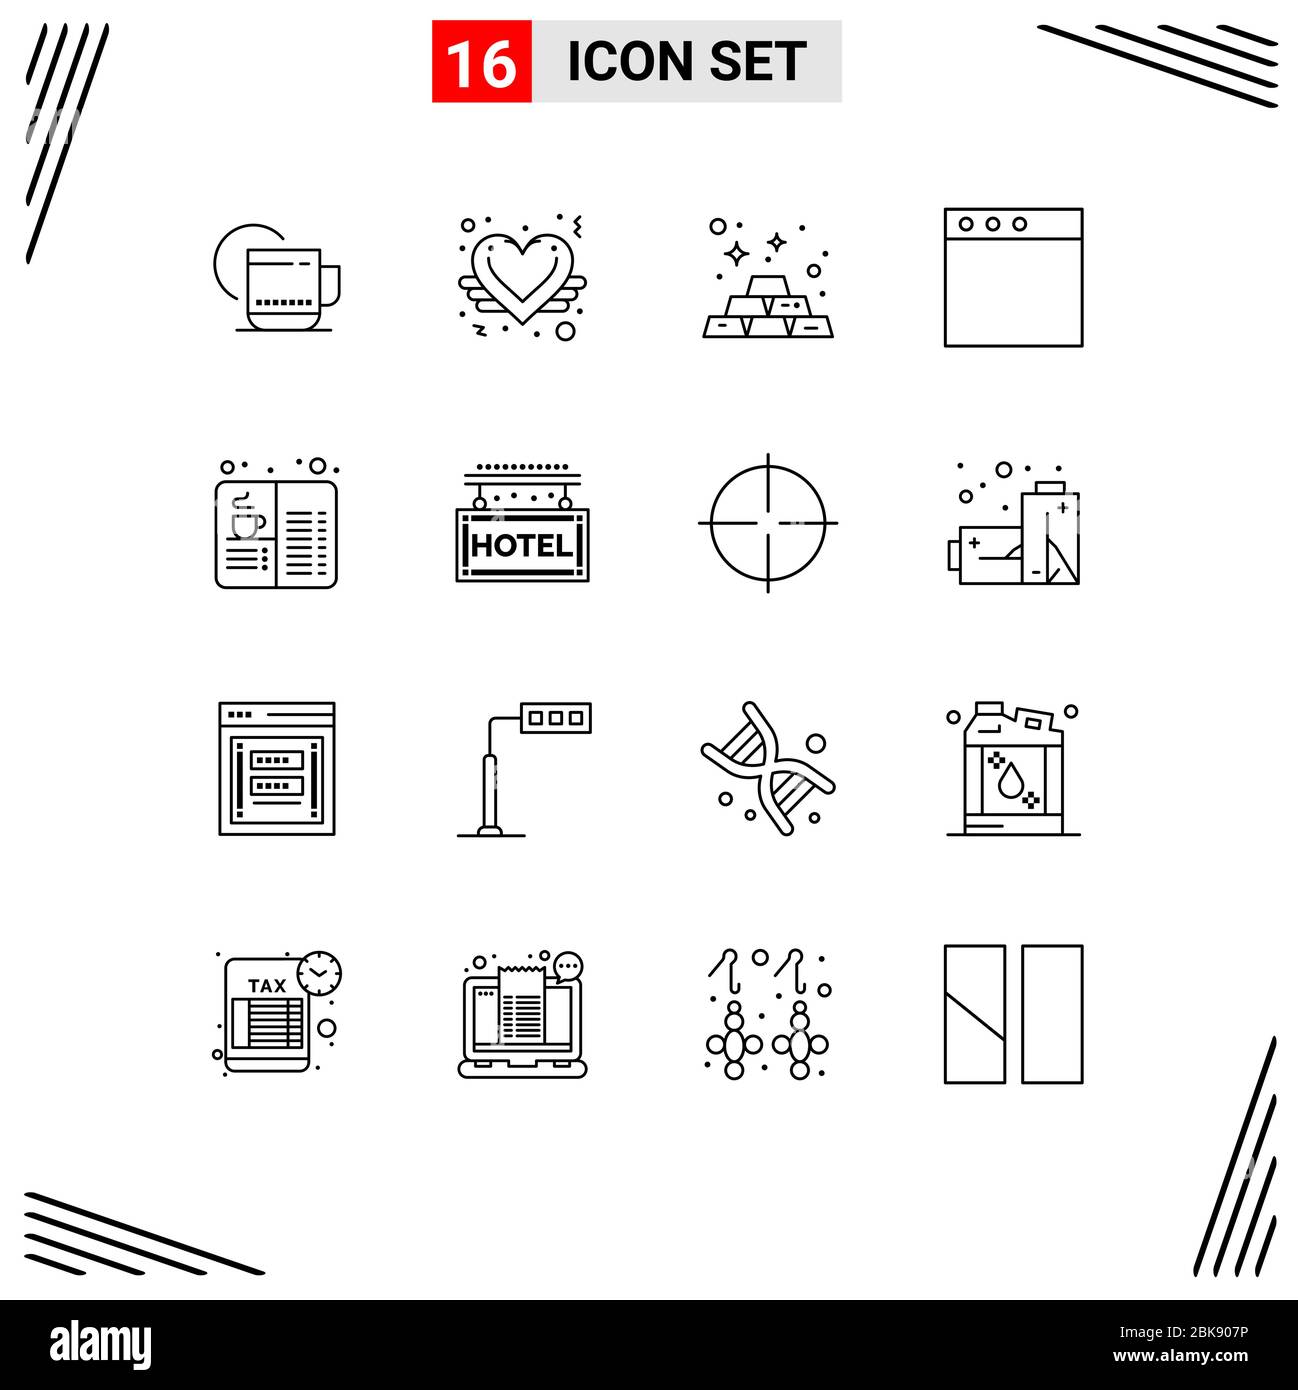 16 User Interface Outline Pack di insegne e simboli moderni di caffè, libro, banche, finestra, app elementi di progettazione vettoriale Illustrazione Vettoriale